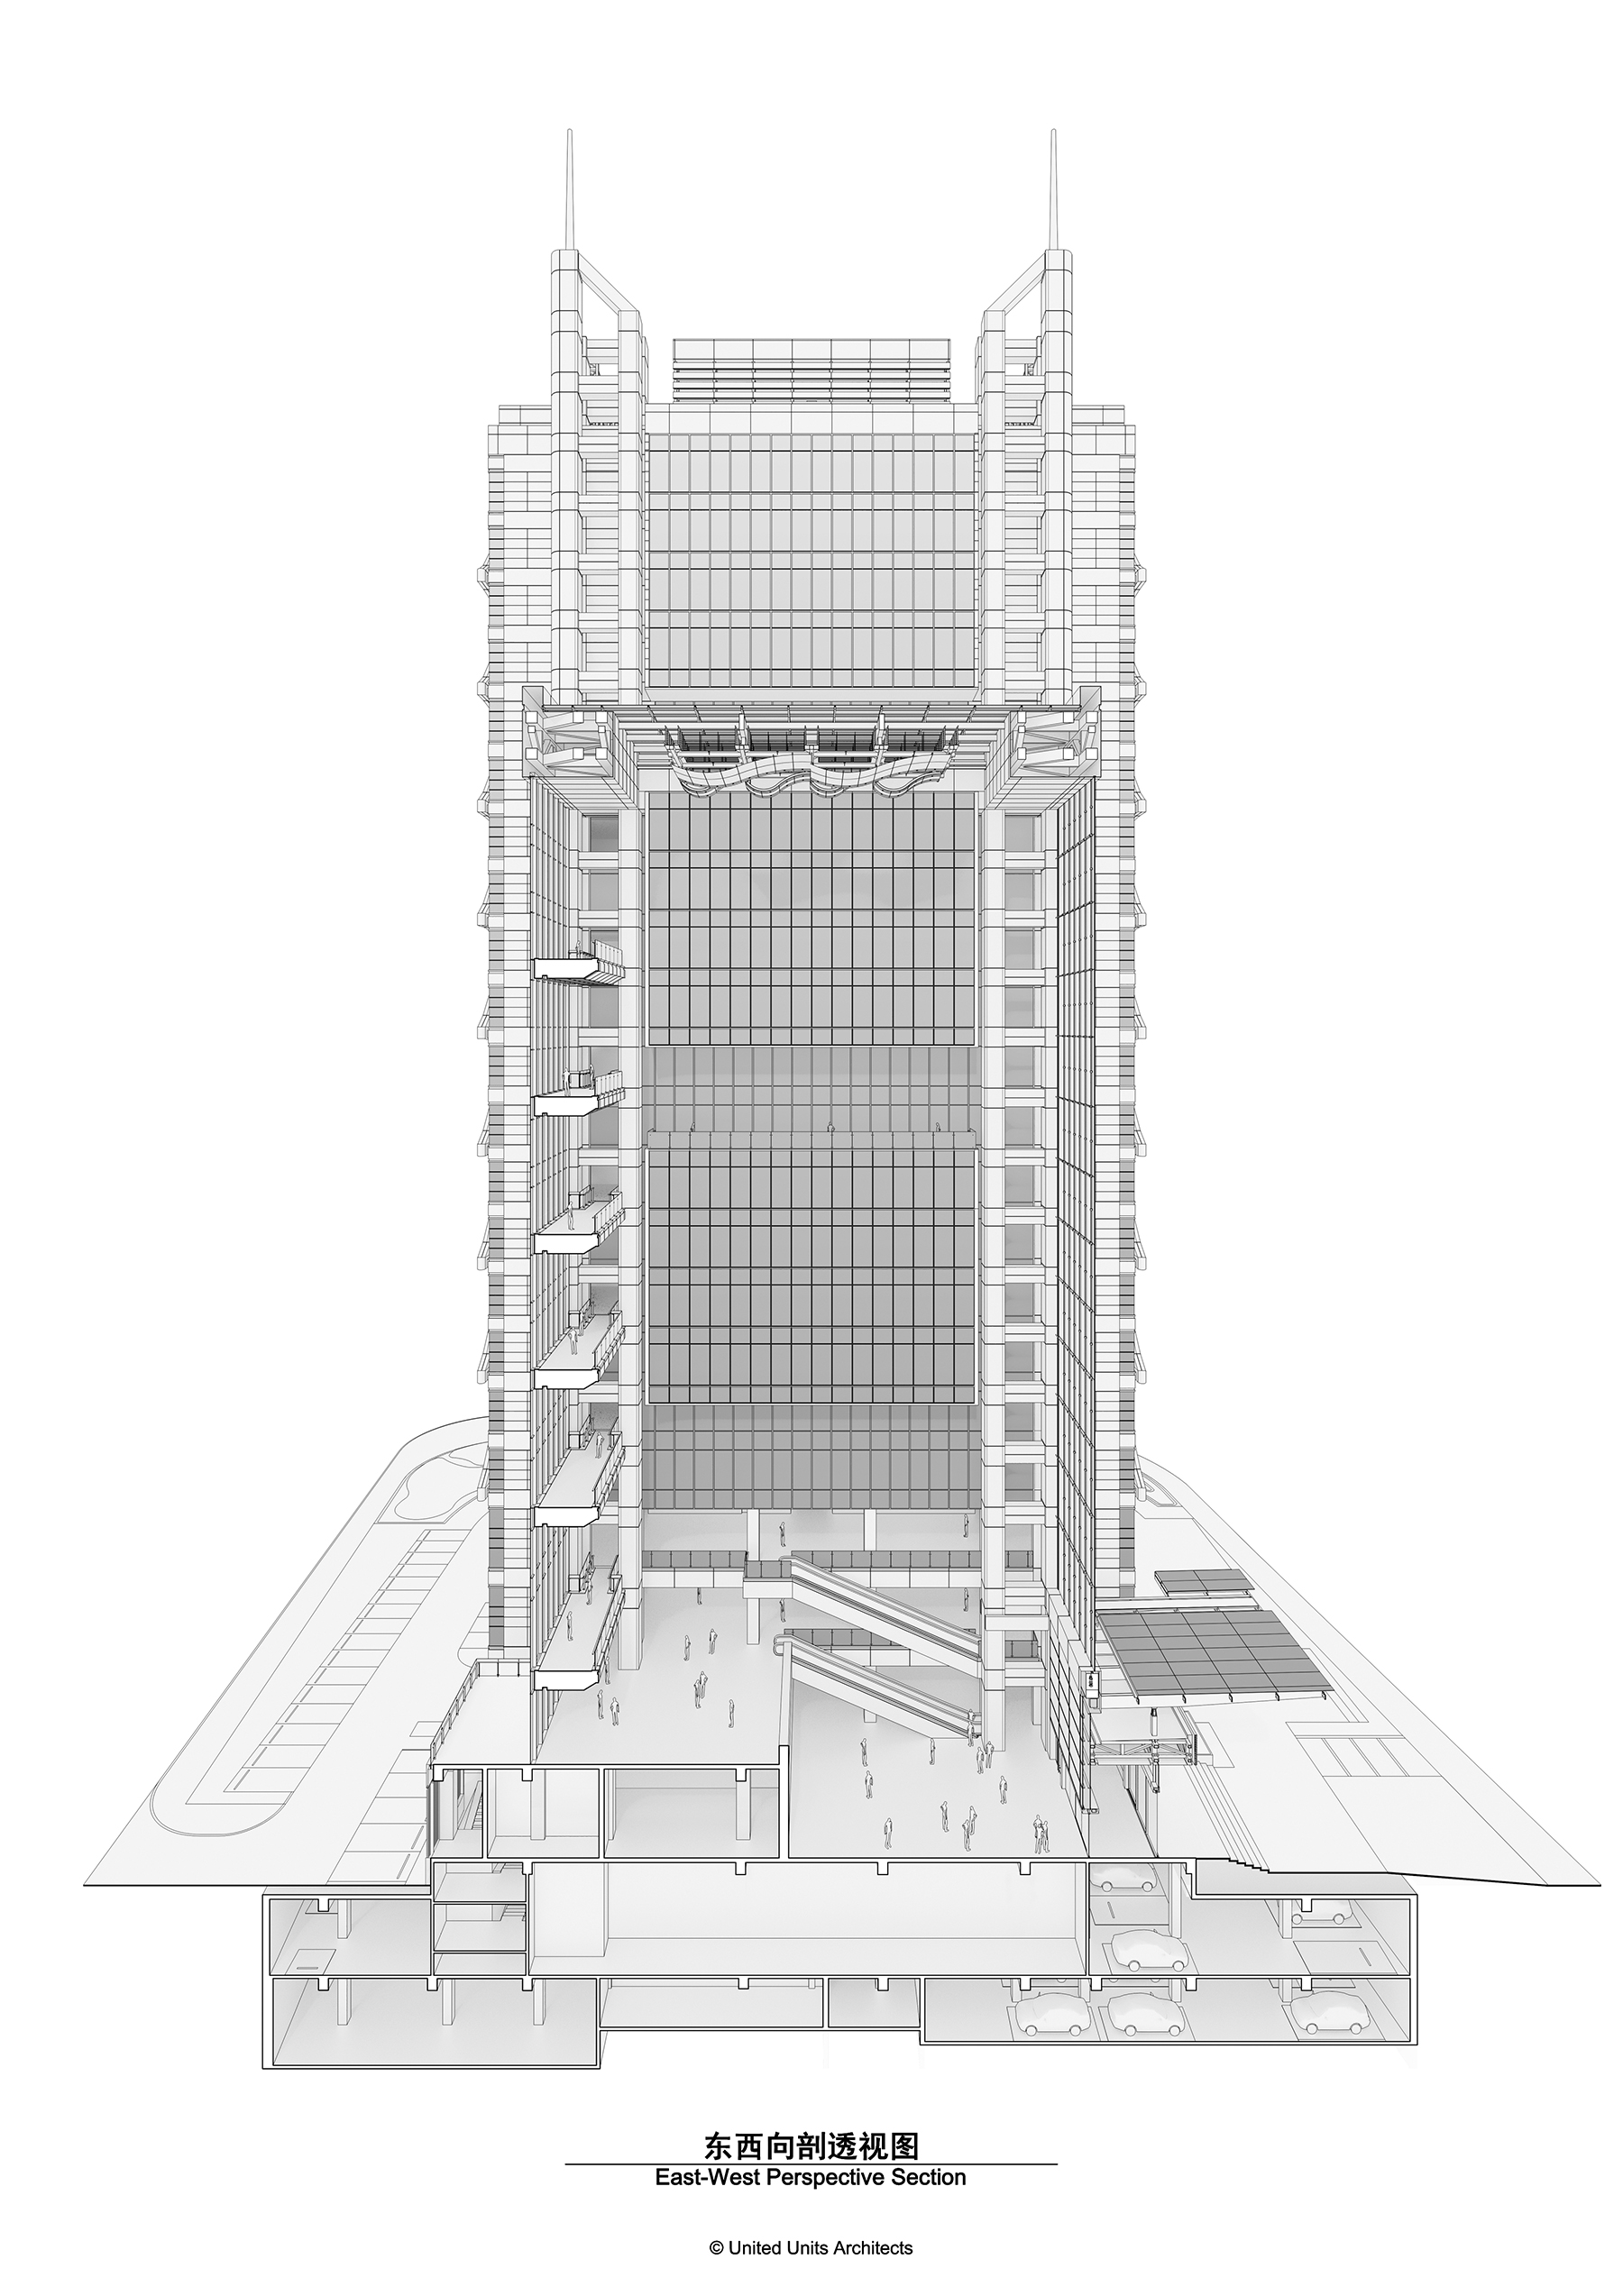 双擎大厦：瑞丰数字金融中心 建筑设计 / UUA 建筑师事务所